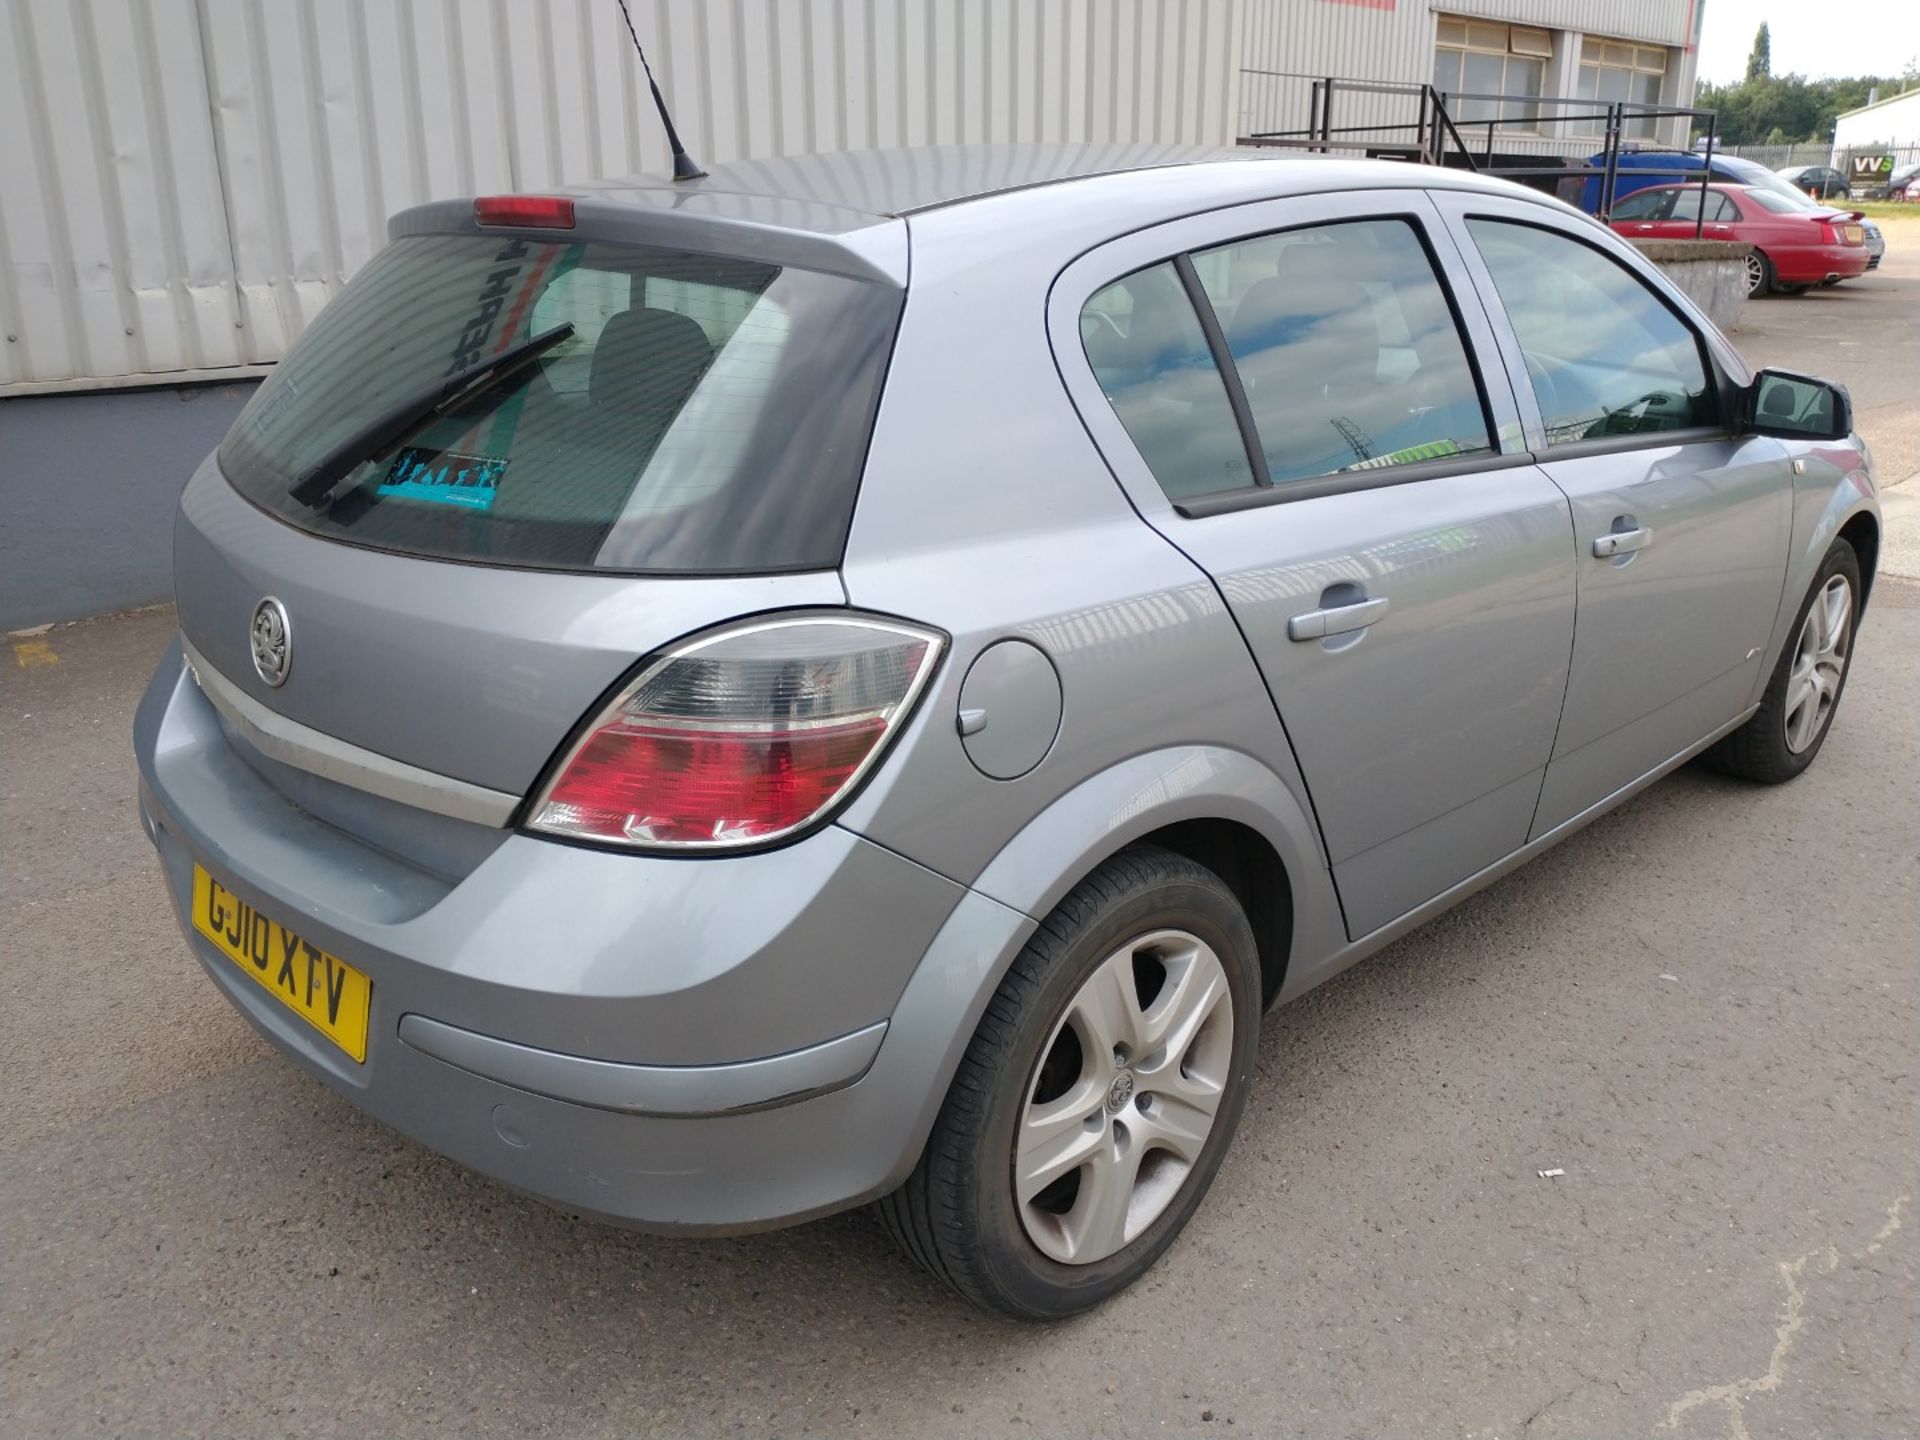 2010 Vauxhall Astra Active 5dr Hatchback 1.4 Petrol - CL505 - Ref: VVS0014 - NO VAT ON THE HAMMER - - Image 12 of 18